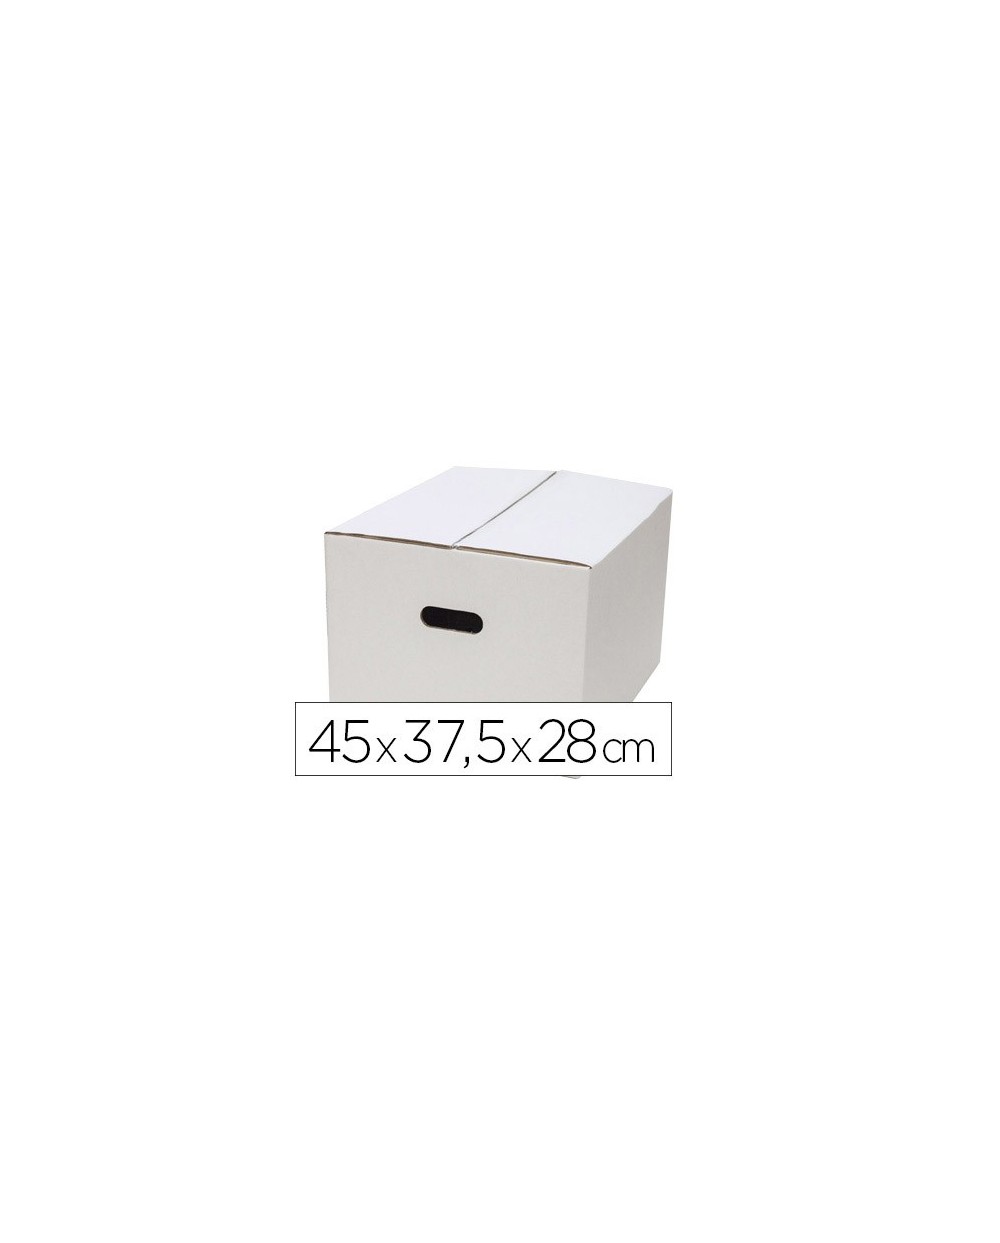 Caja para embalar q connect blanca con asas doble canal 450x280 mm